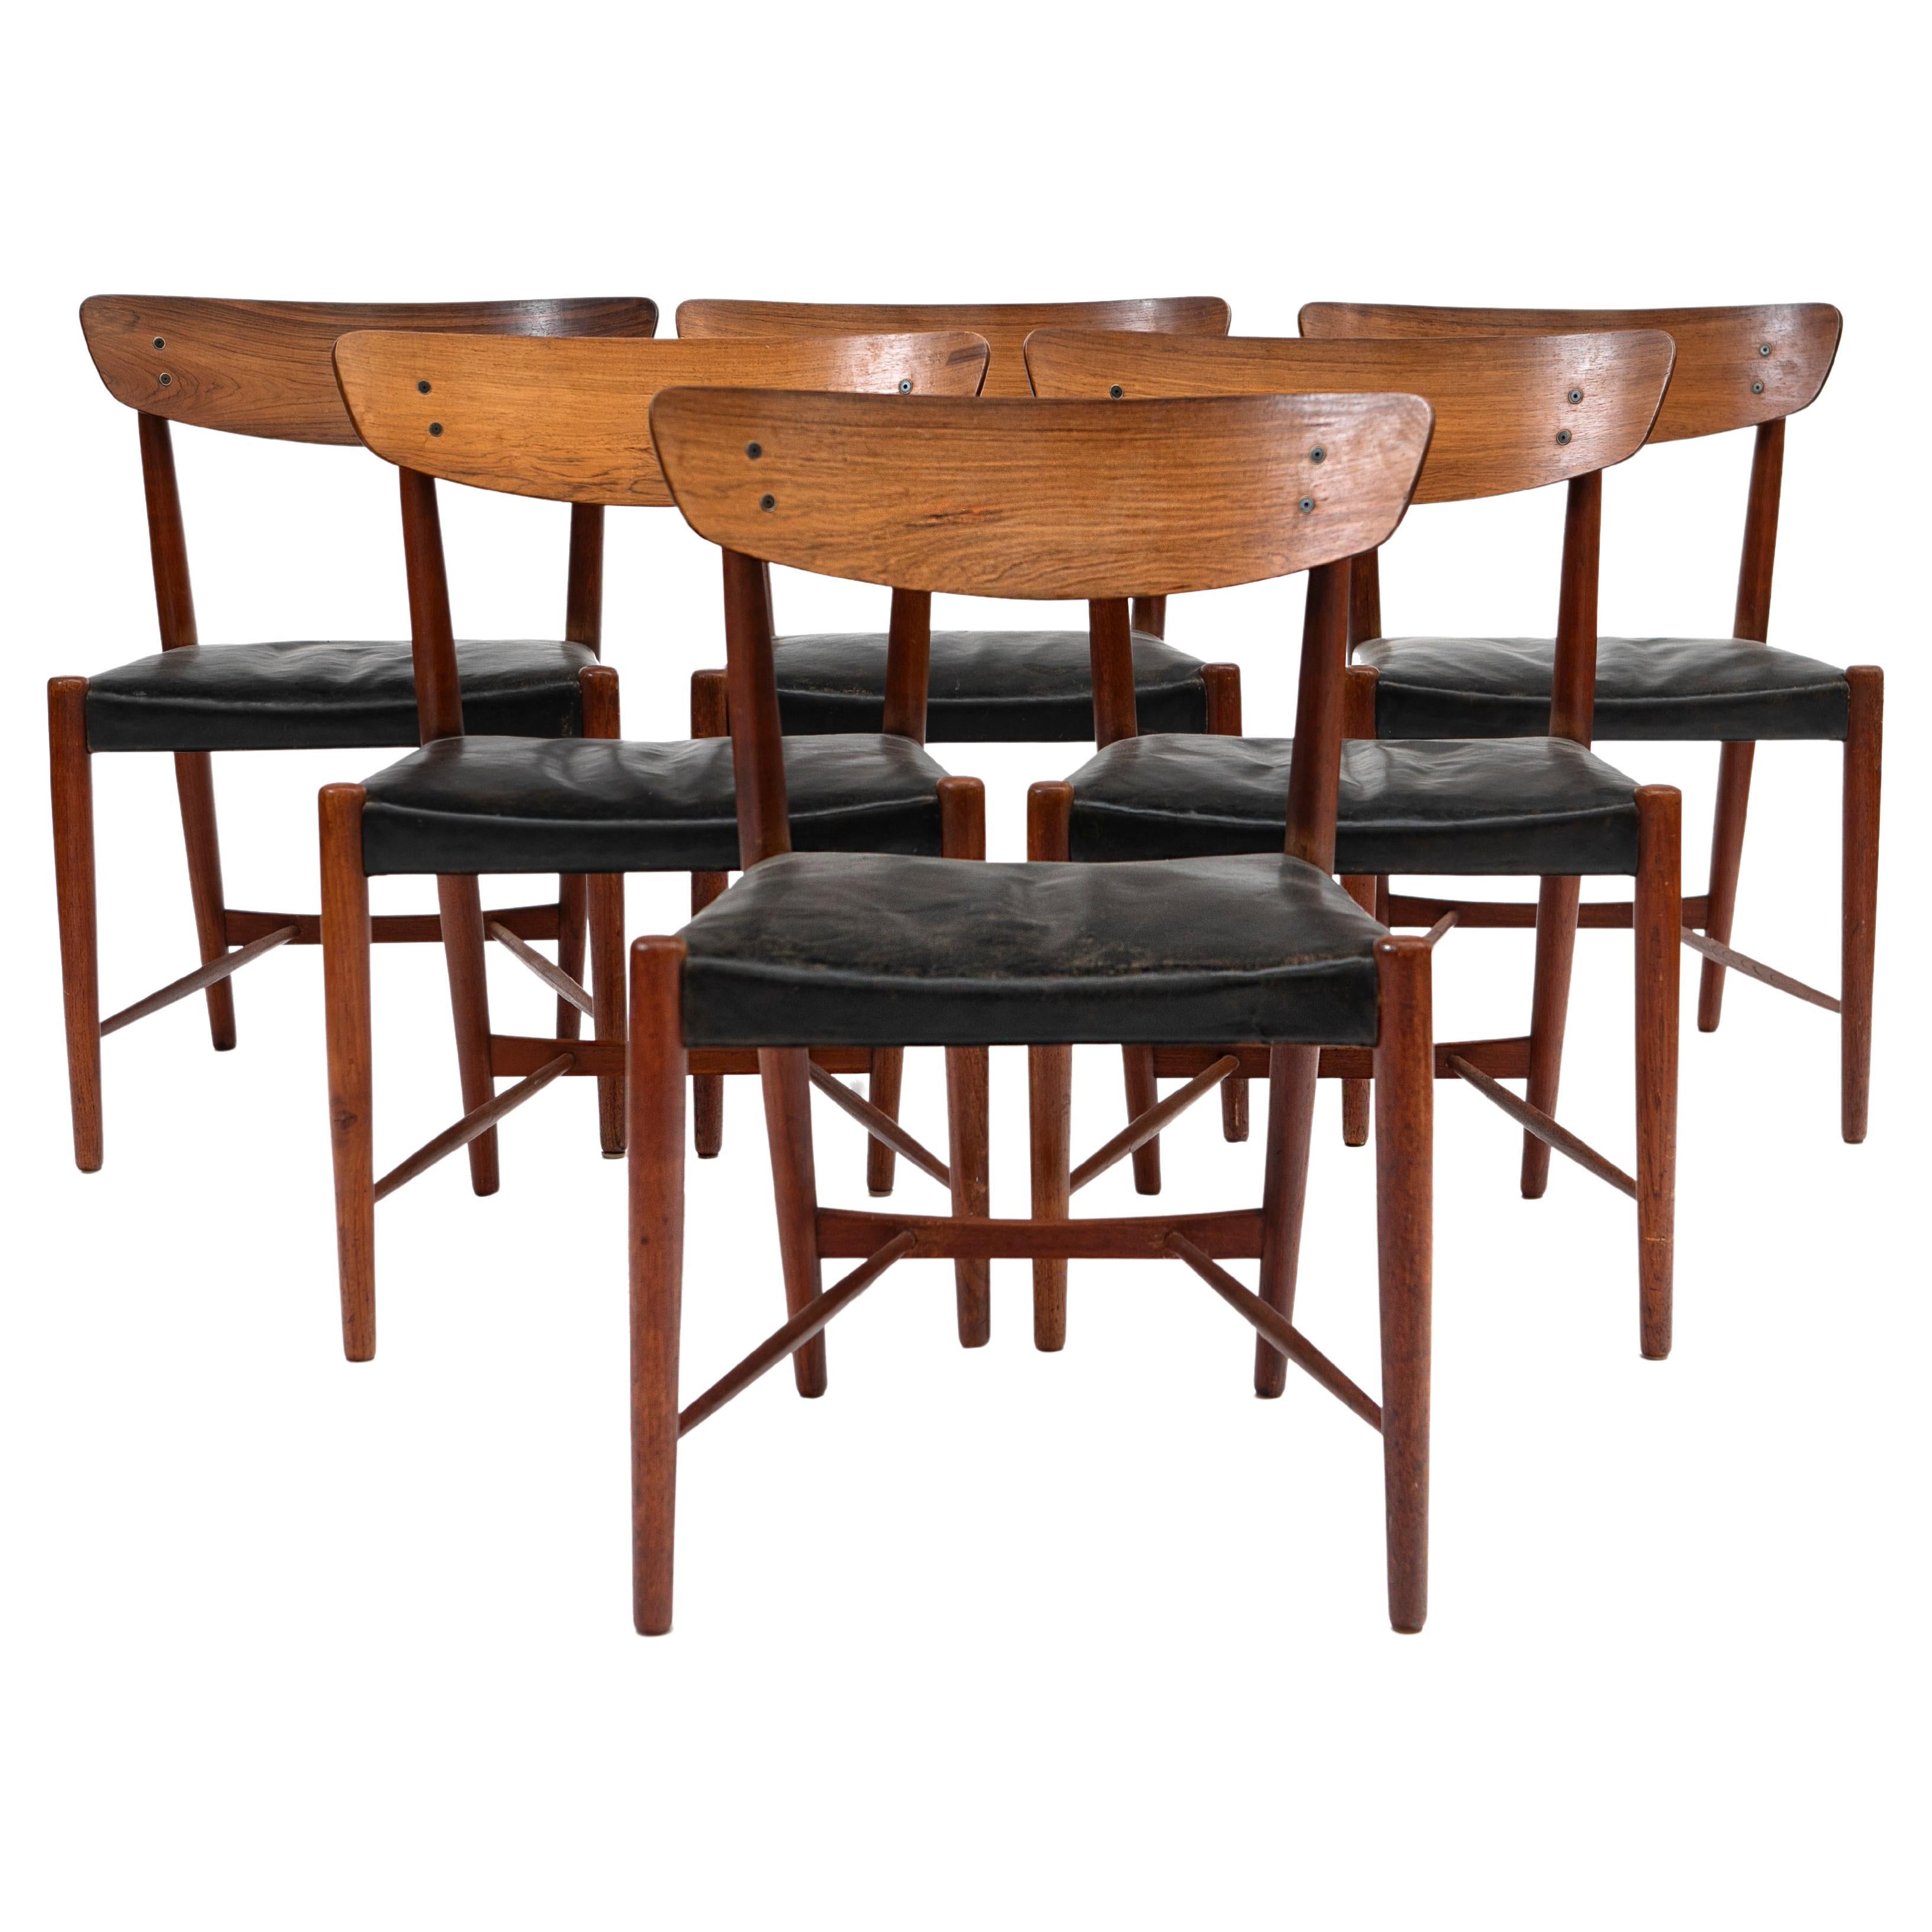 Rare ensemble de six chaises de salle à manger conçu par le designer danois Ib Kofod-Larsen.
Fabriqué par Christensen & Larsen Cabinet, Danemark, 1954.
Les cadres sont en palissandre de Rio et les sièges sont recouverts de cuir noir.
Le prix est